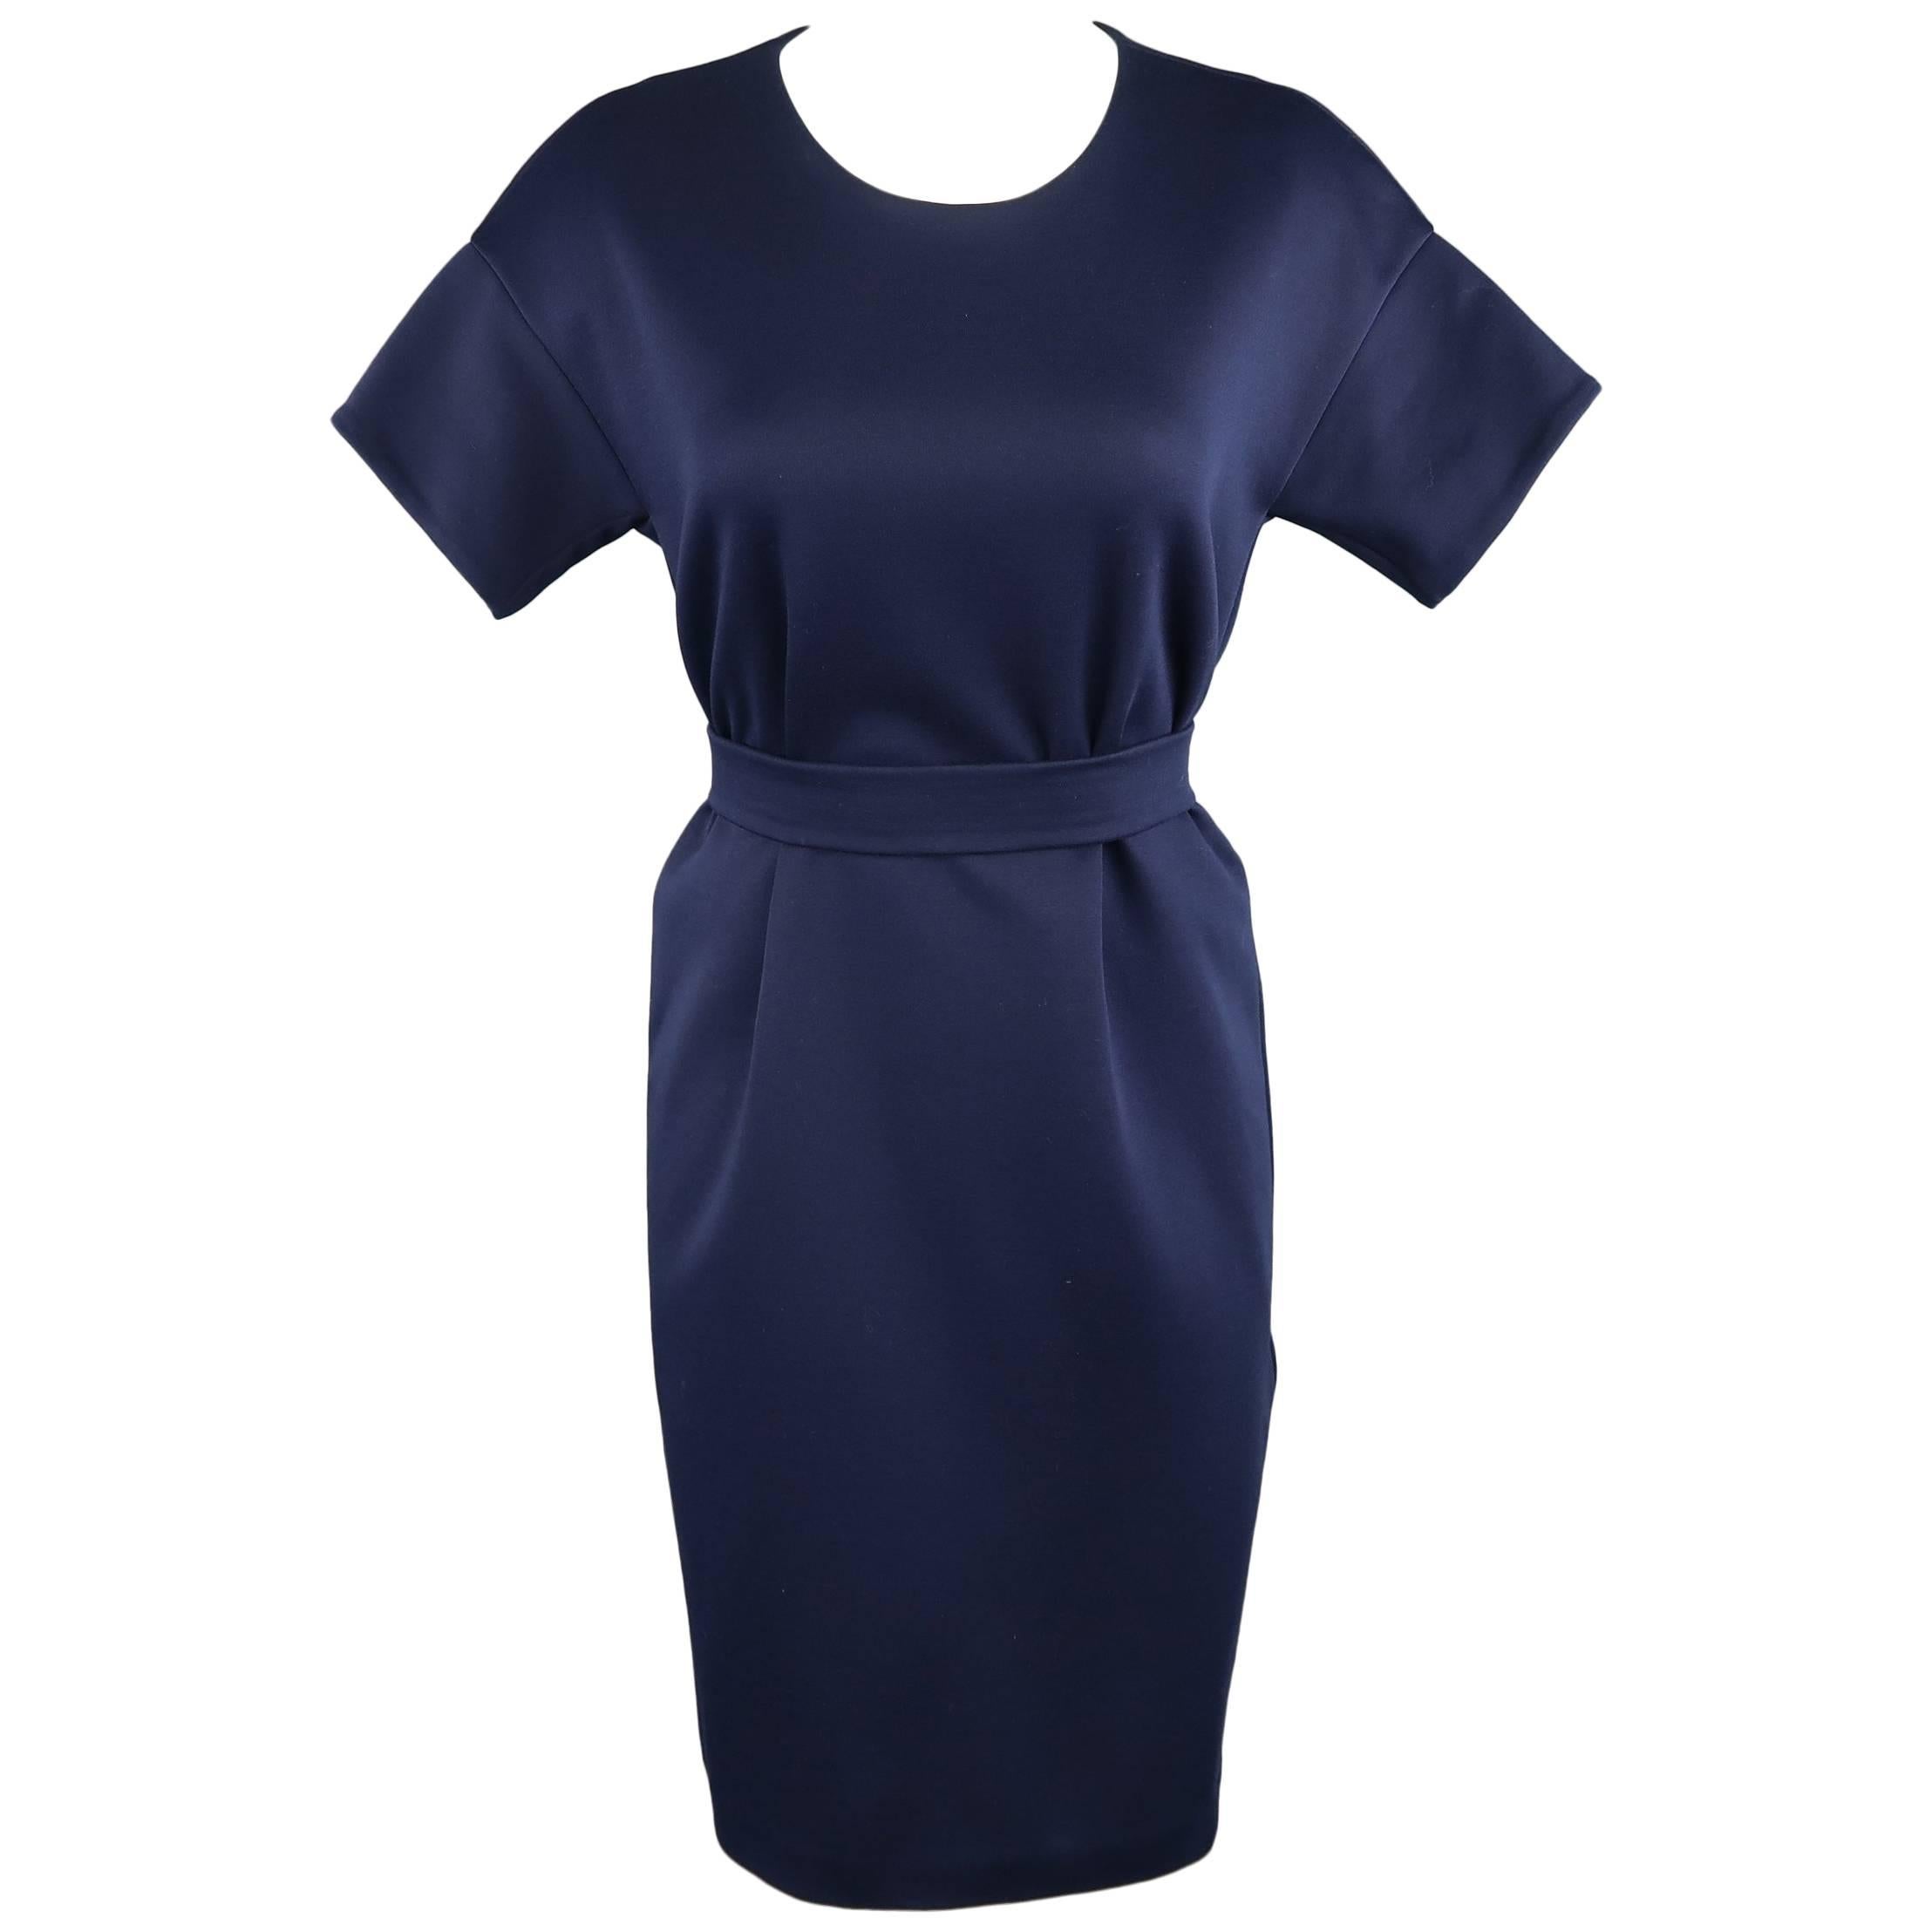 JIL SANDER Size M Navy Cotton / Polyester Jersey Short Sleeve Belted Shift Dress